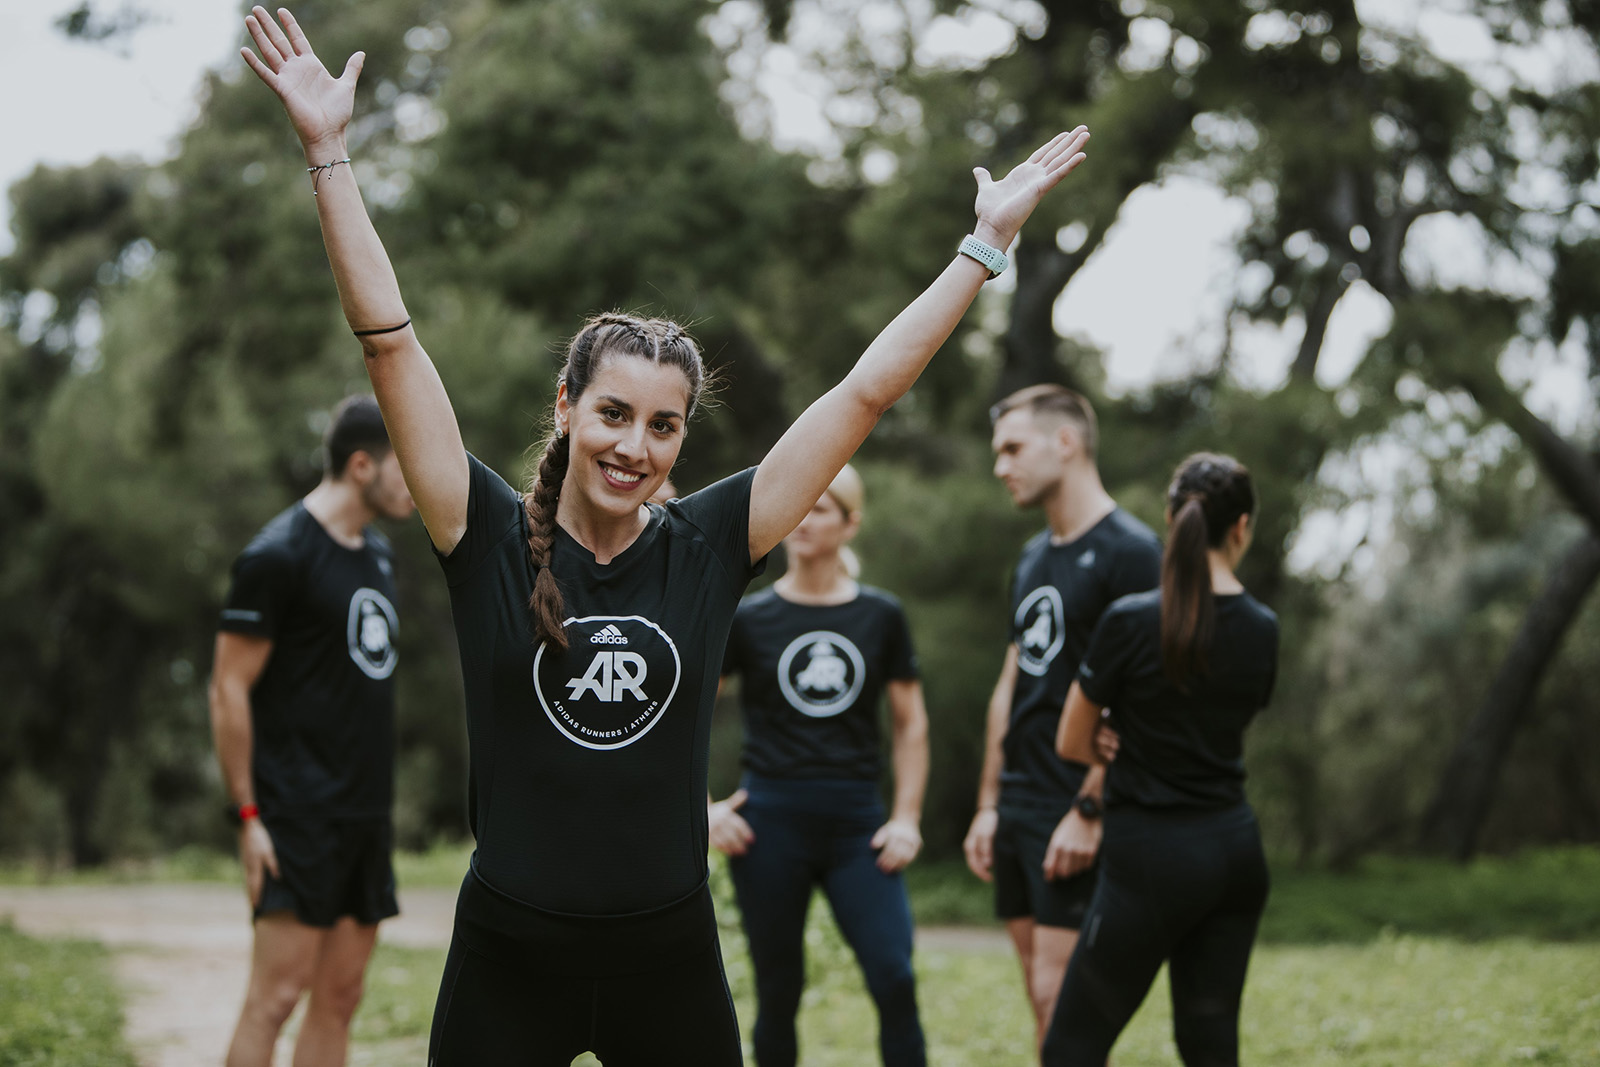 Οι adidas Runners Athens & η INTERSPORT σε προσκαλούν σε νέες running διαδρομές